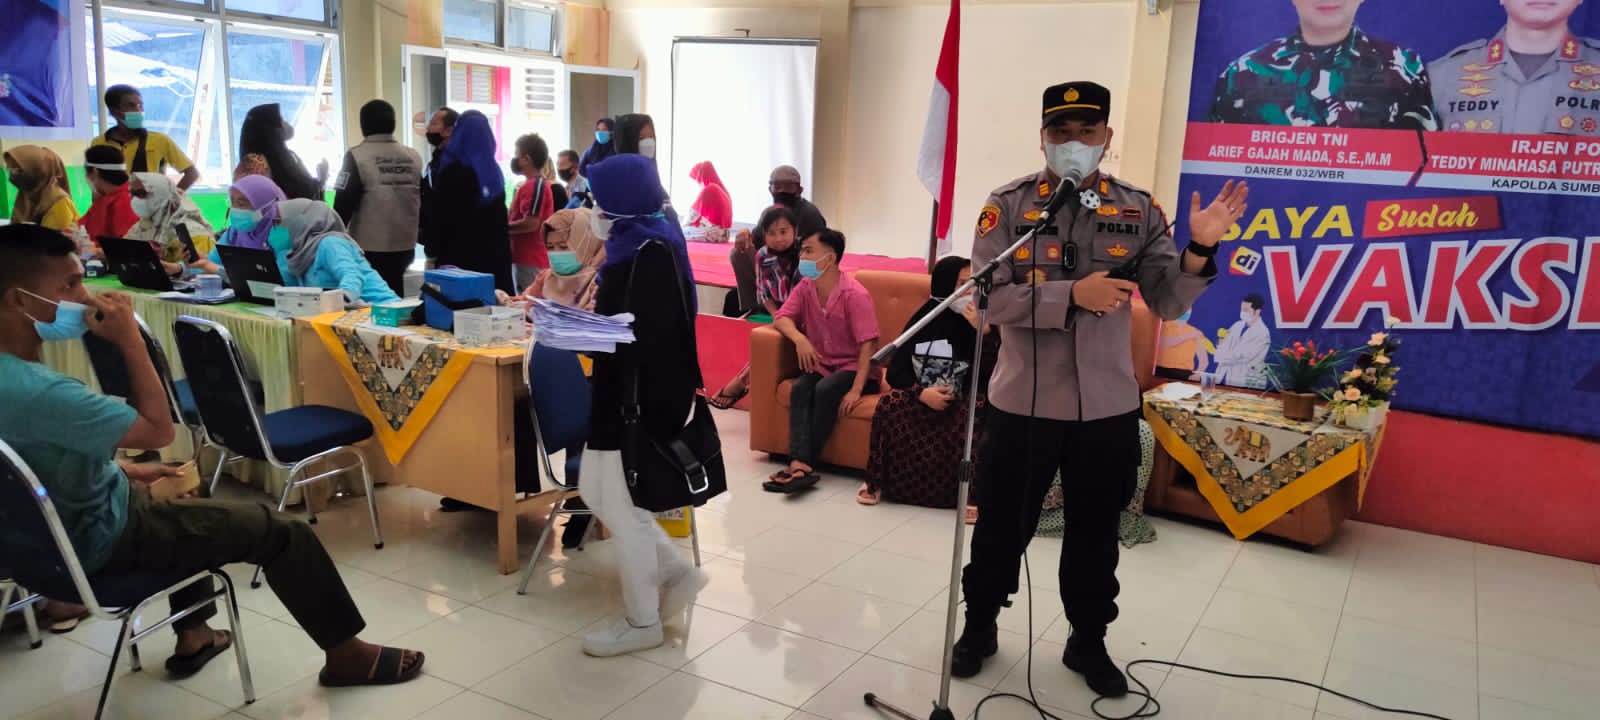 Kapolsek Lubuk Begalung memimpin pelaksanaan vaksinasi Covid-19 di Kecamatan Lubuk Begalung. (Foto: Dok. Istimewa)